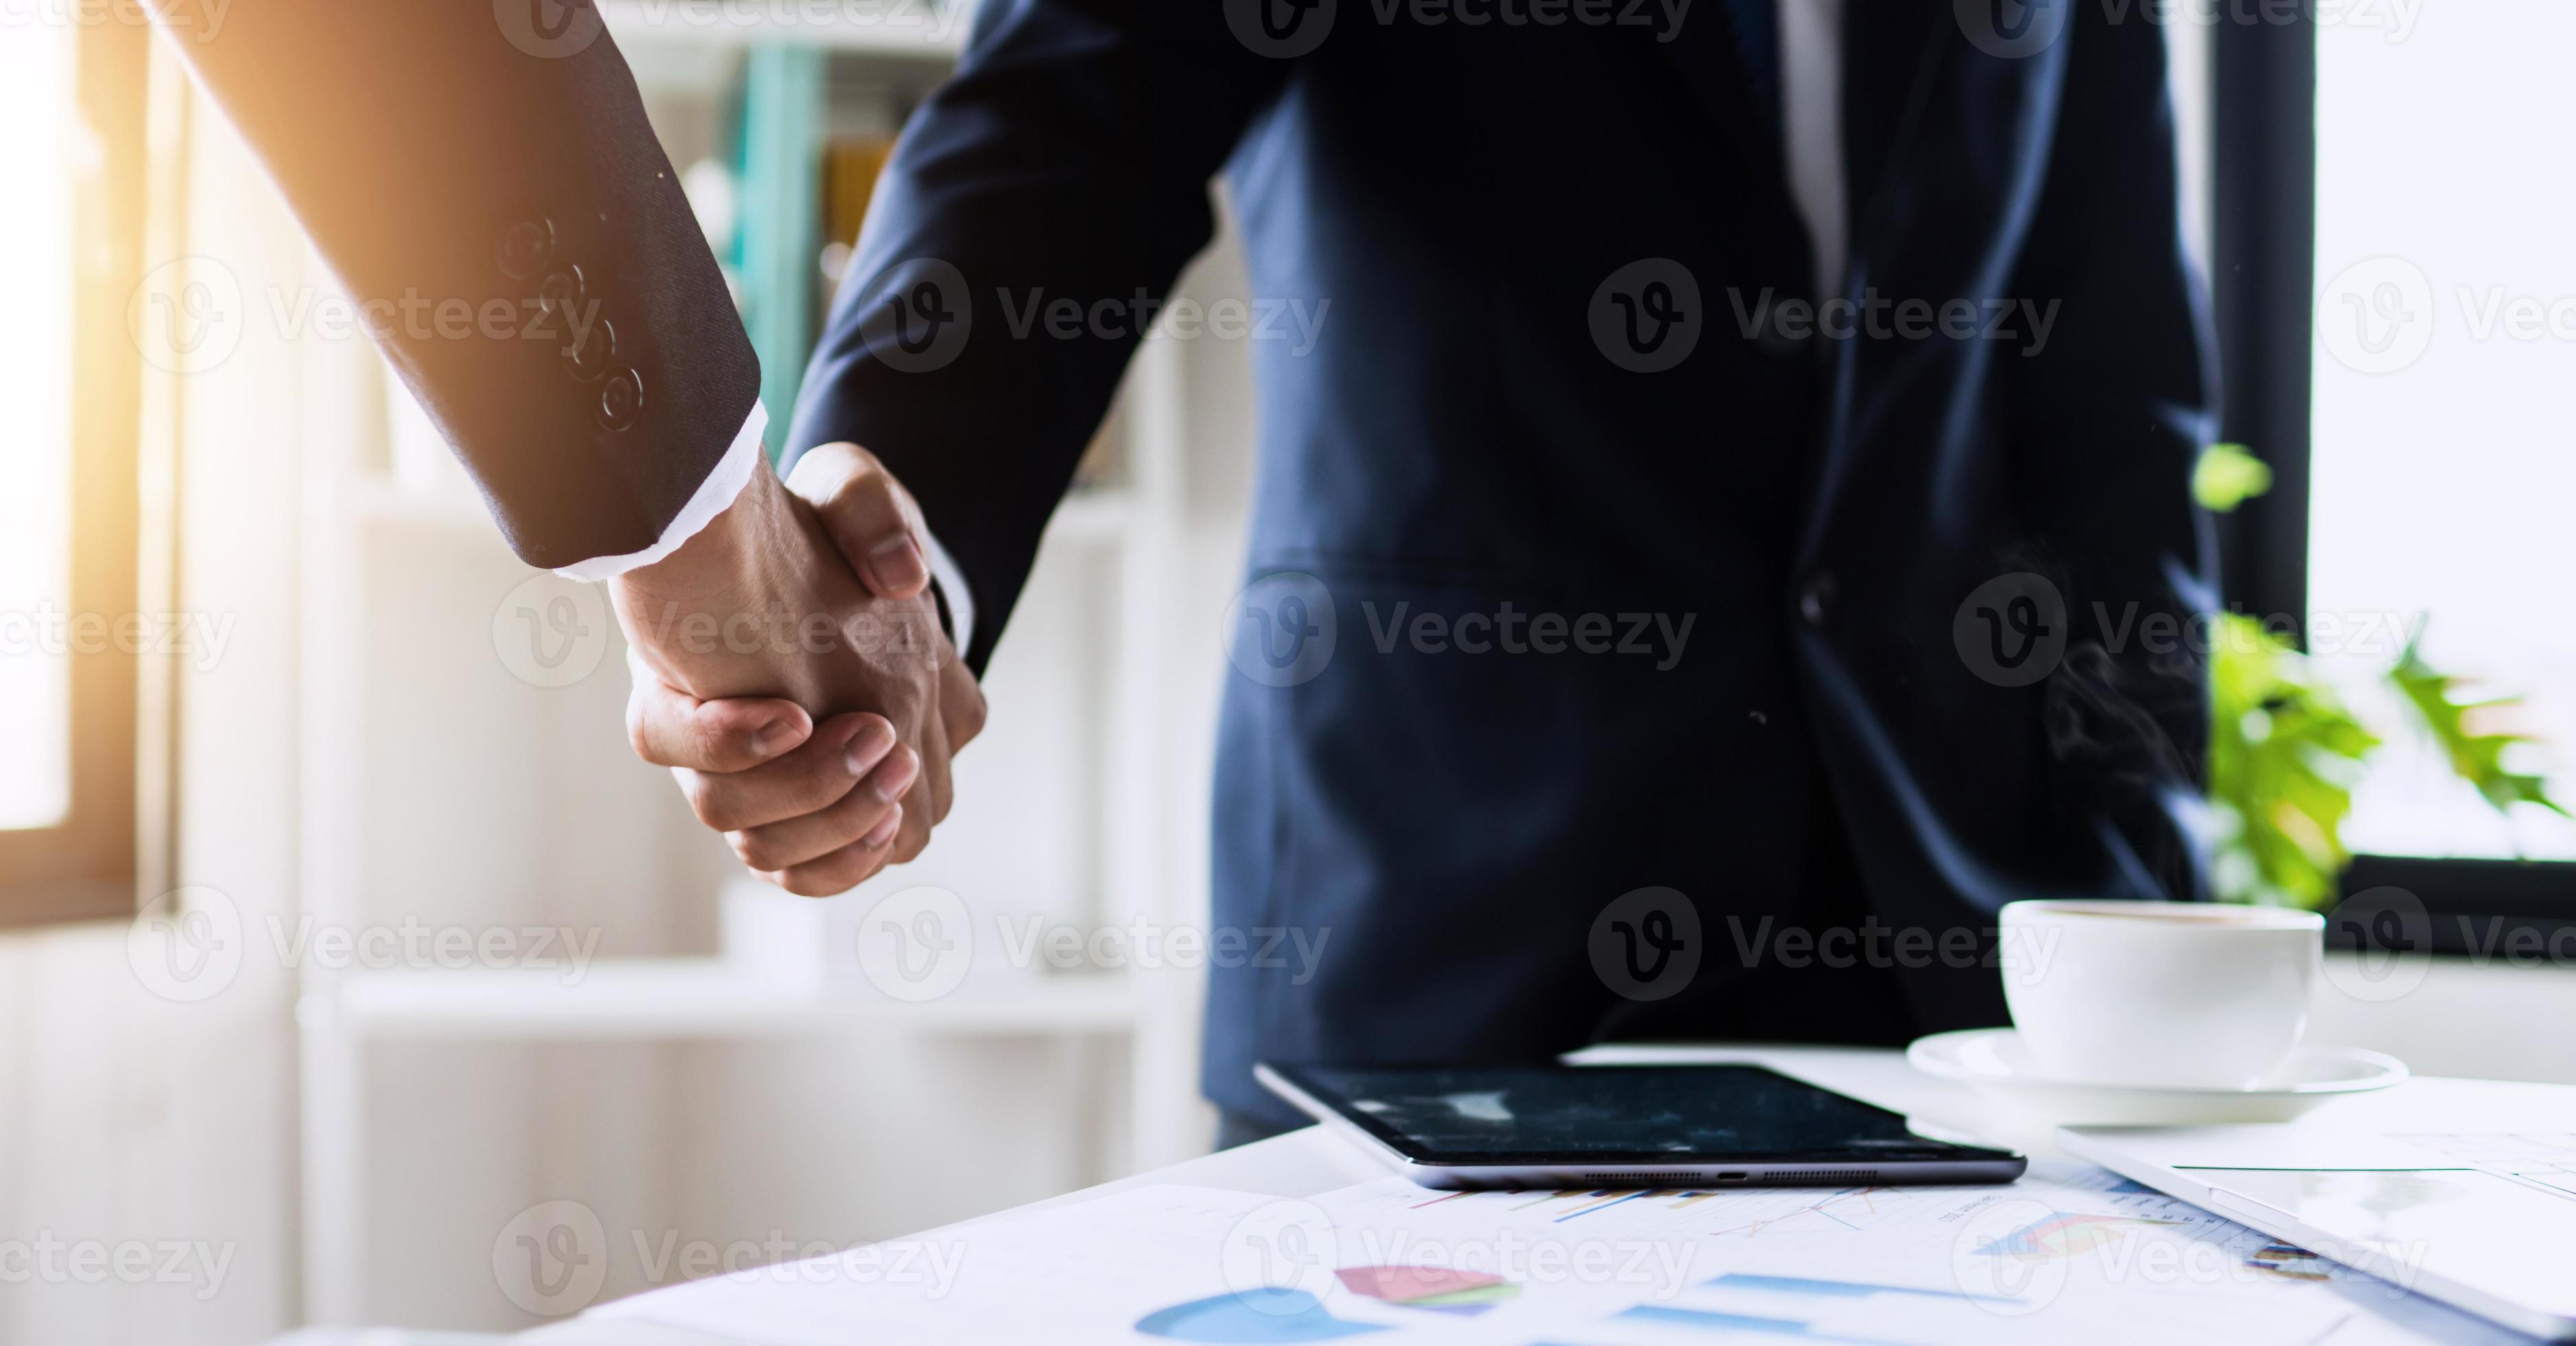 negociação bem-sucedida e conceito de aperto de mão foto